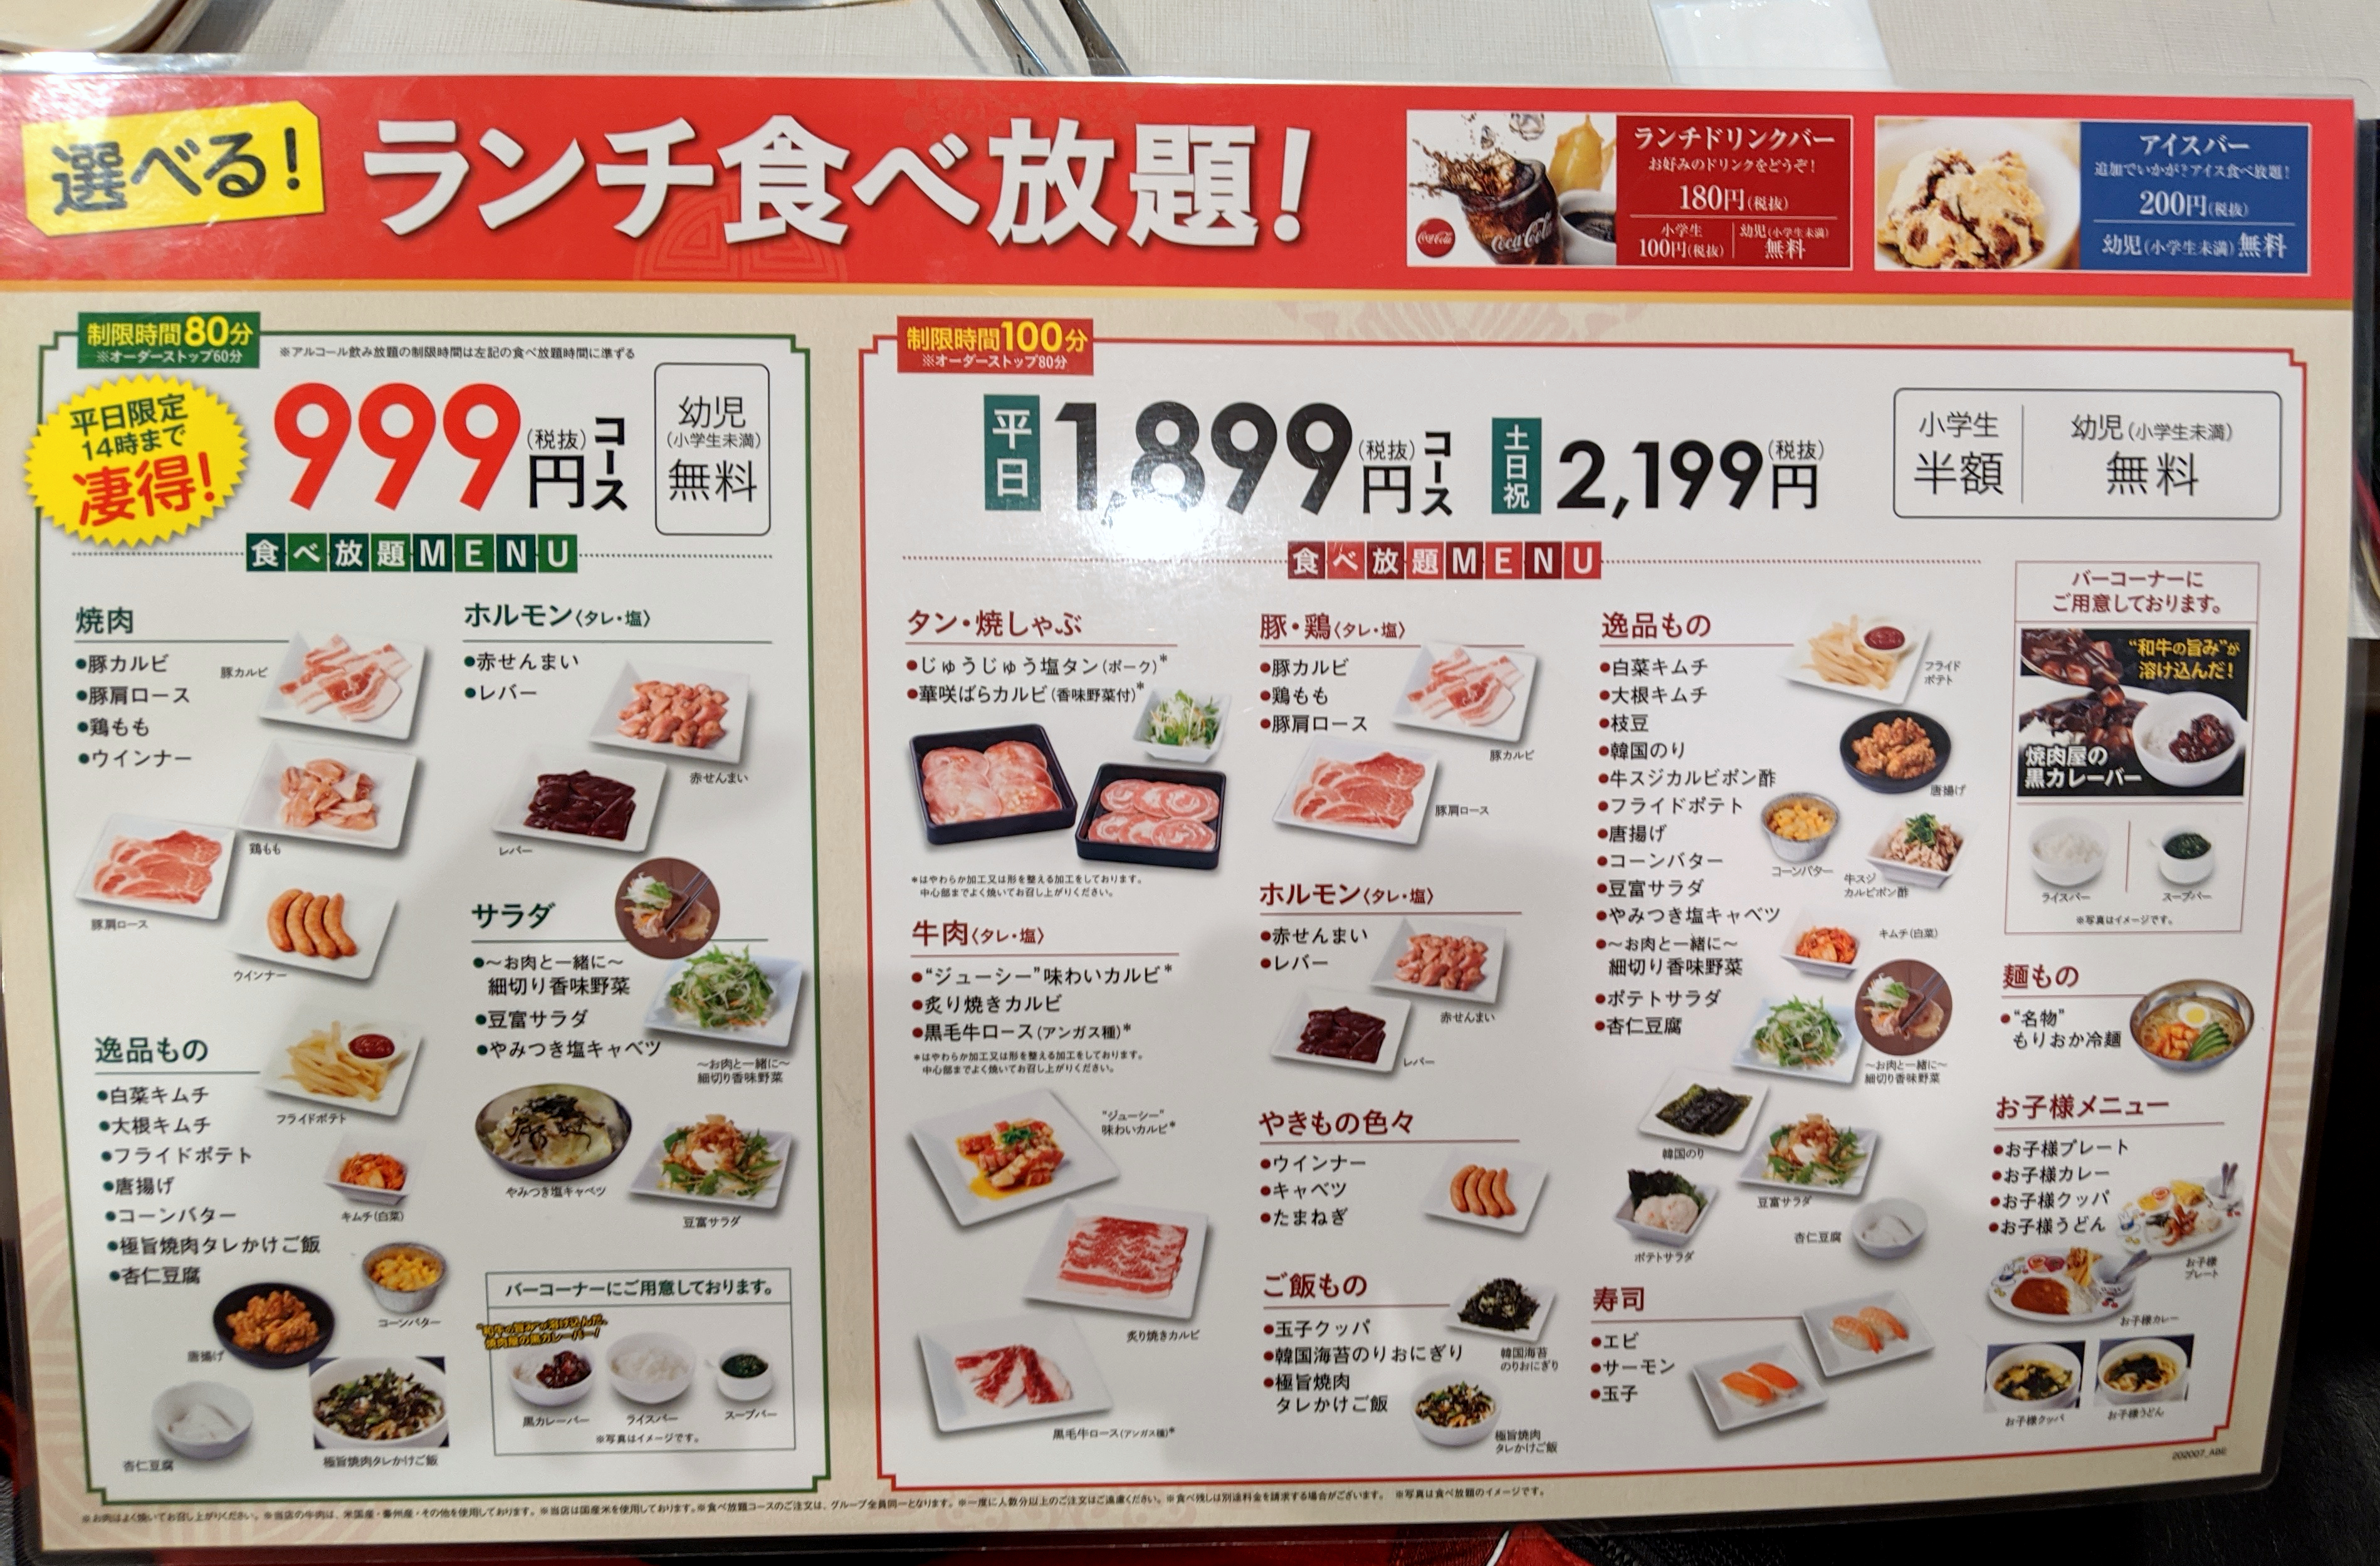 コスパ検証 ガスト系列の焼肉店 じゅうじゅうカルビ の999円焼肉食べ放題ランチはお得なのか 最後の最後に驚いた ロケットニュース24